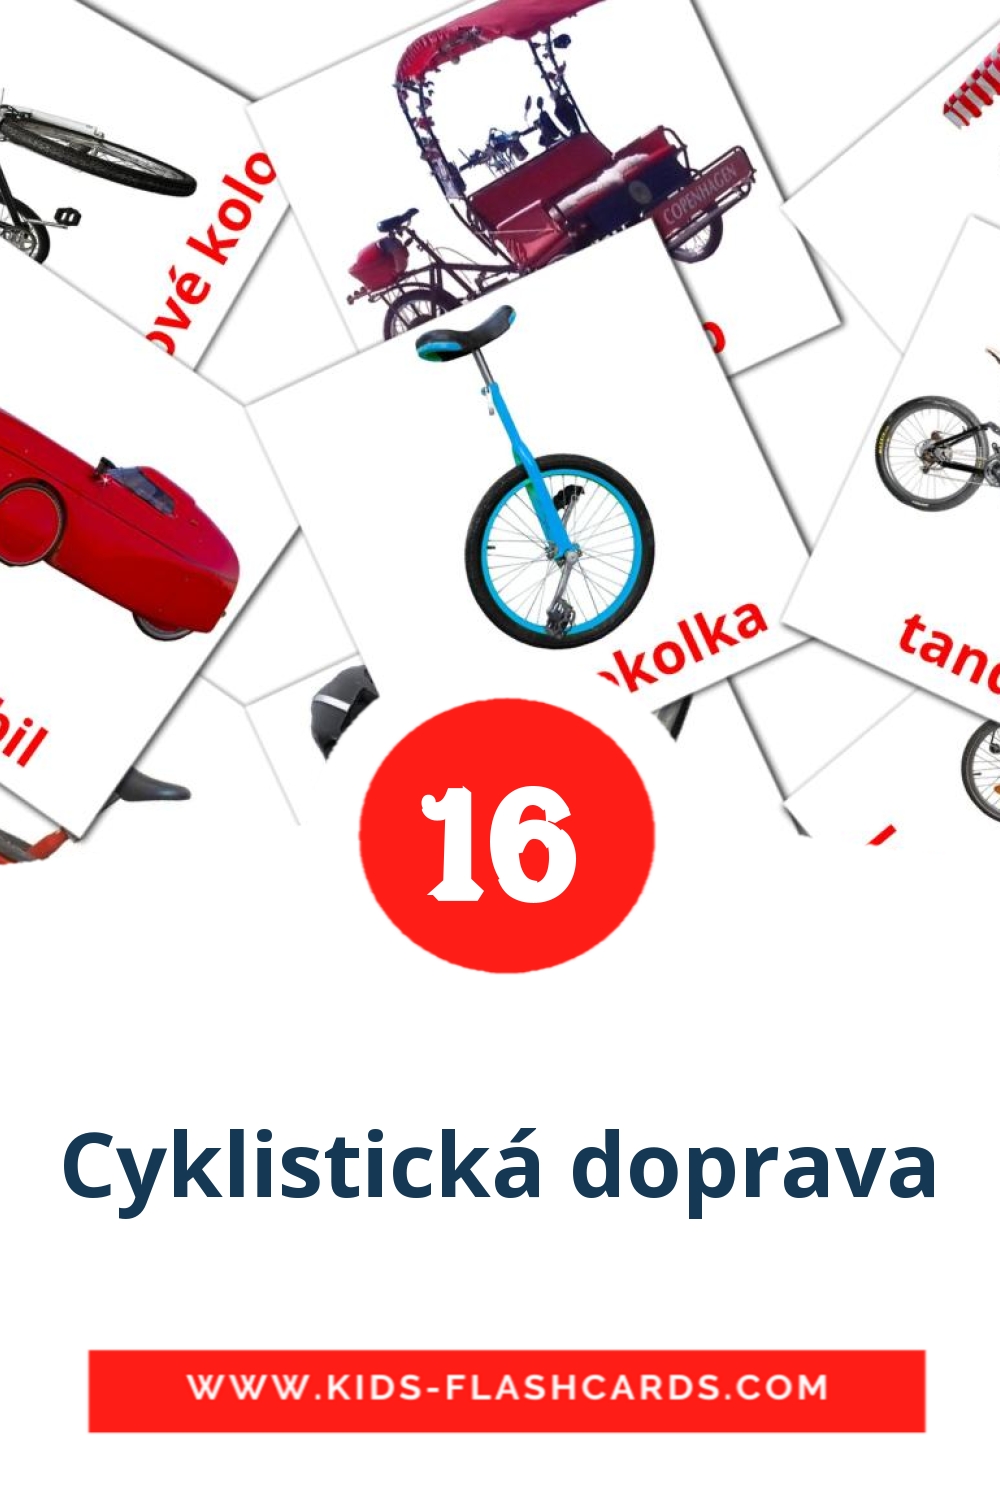 16 carte illustrate di Cyklistická doprava per la scuola materna in ceco